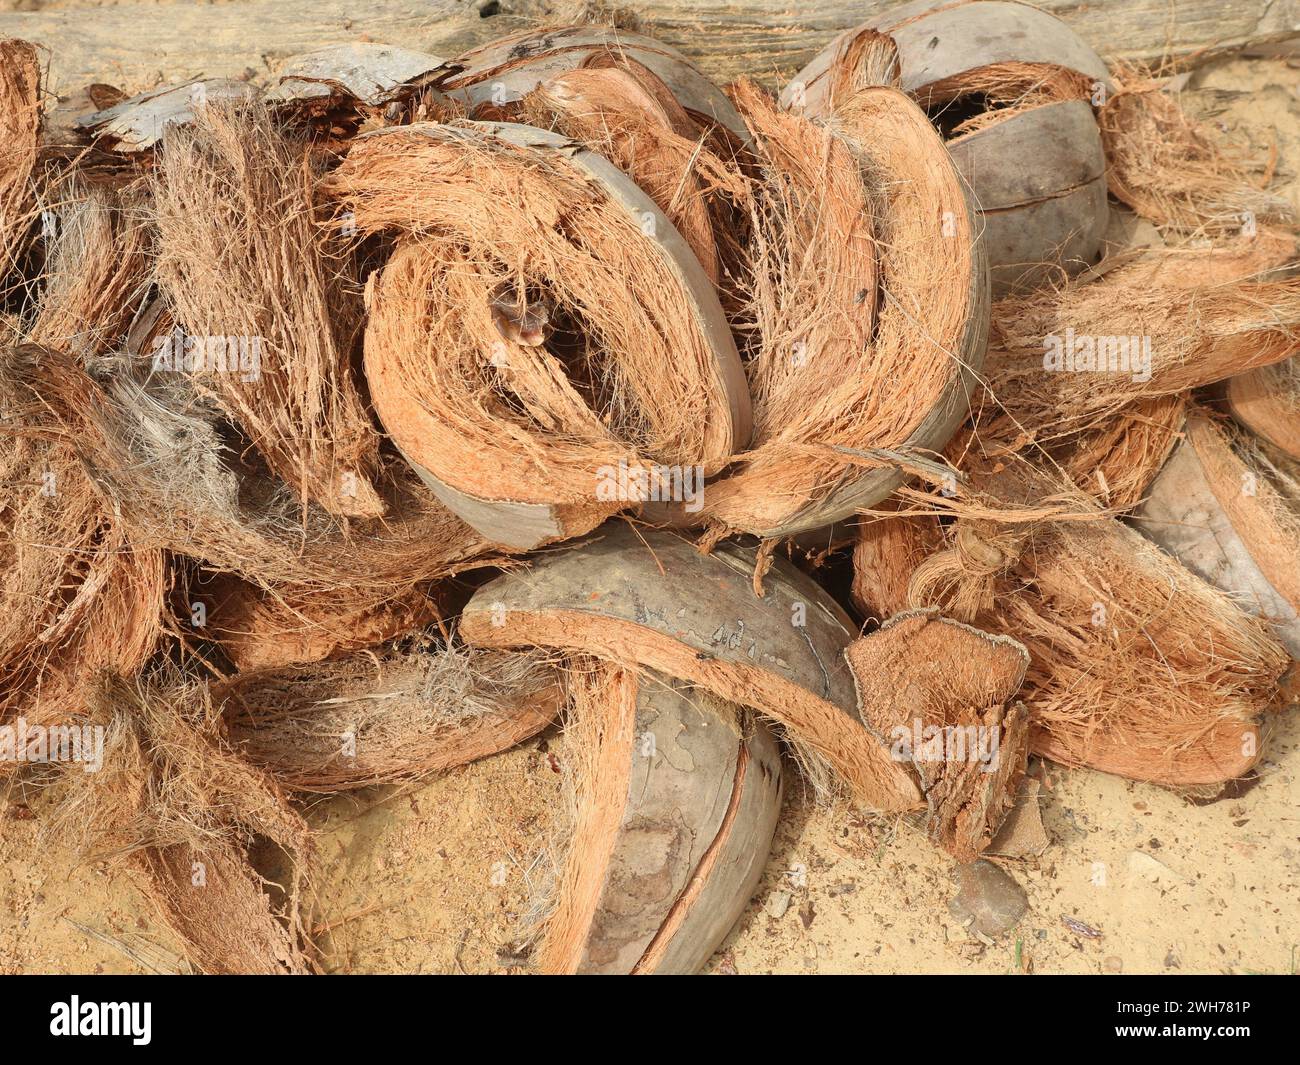 La fibra di cocco di scarto che presenta molti vantaggi contiene fibre ad alto potassio per fertilizzanti organici Foto Stock